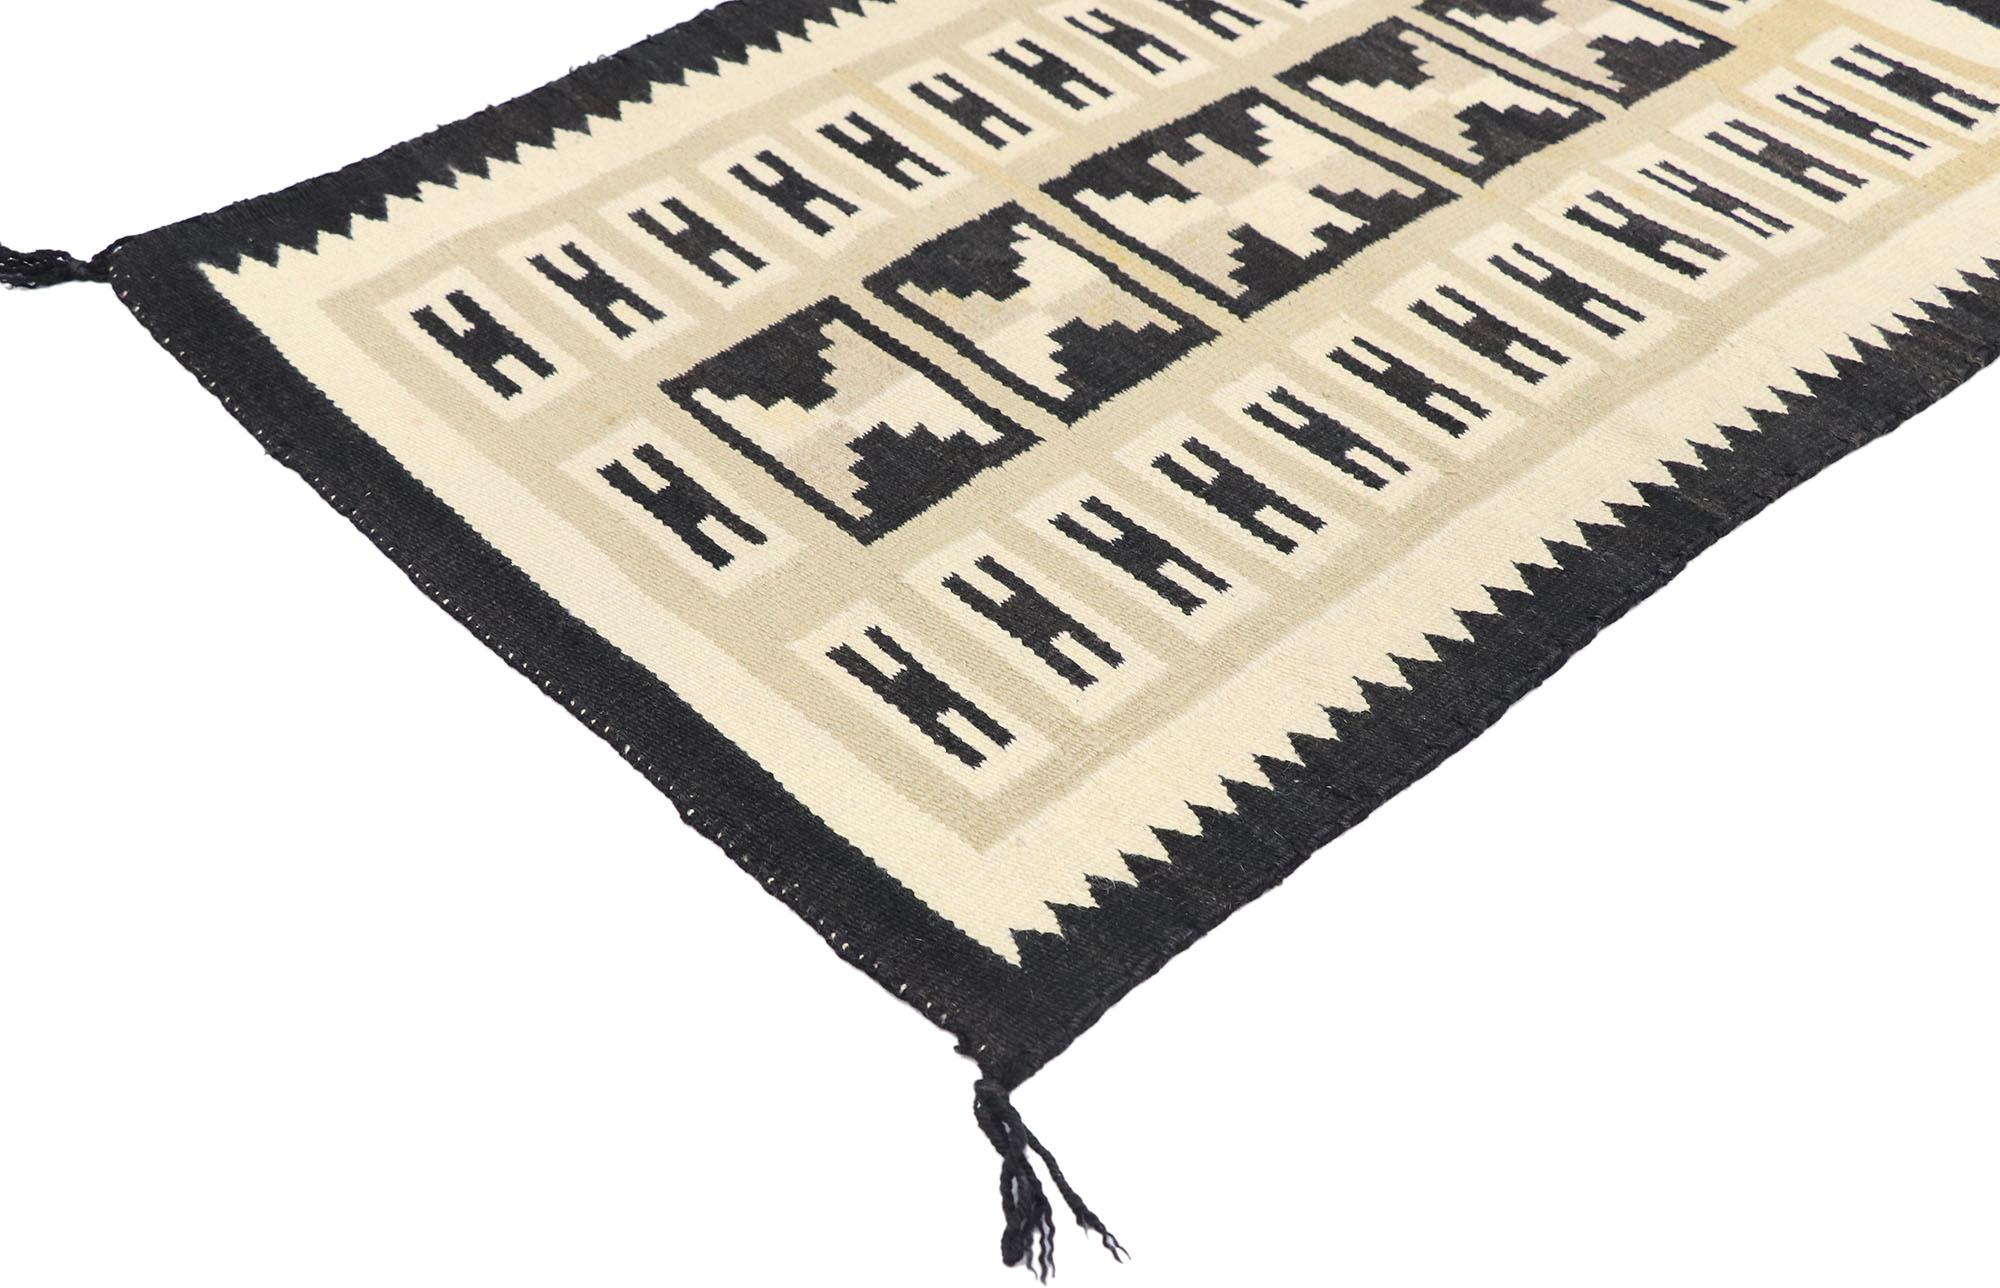 77776, tapis Kilim Navajo vintage de style Two Grey Hills. Avec son design expressif et audacieux, ses détails et sa texture incroyables, ce tapis Kilim Navajo vintage en laine tissé à la main est une vision captivante de la beauté tissée qui met en